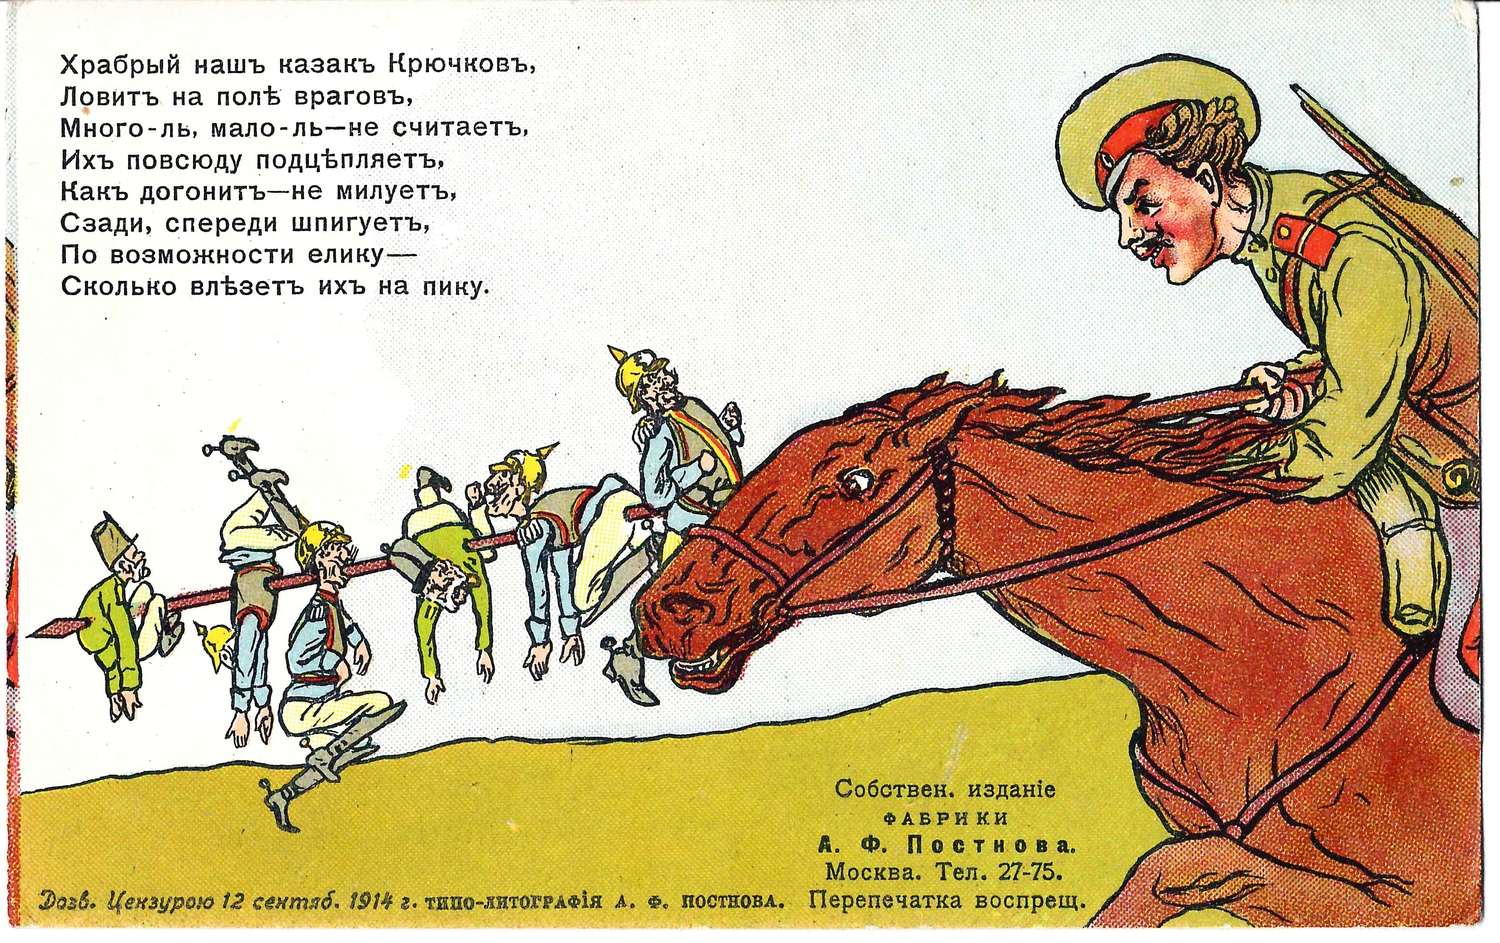 Открытка «Храбрый наш казак Крючков...» Издание А.Ф. Постнова, 1914.